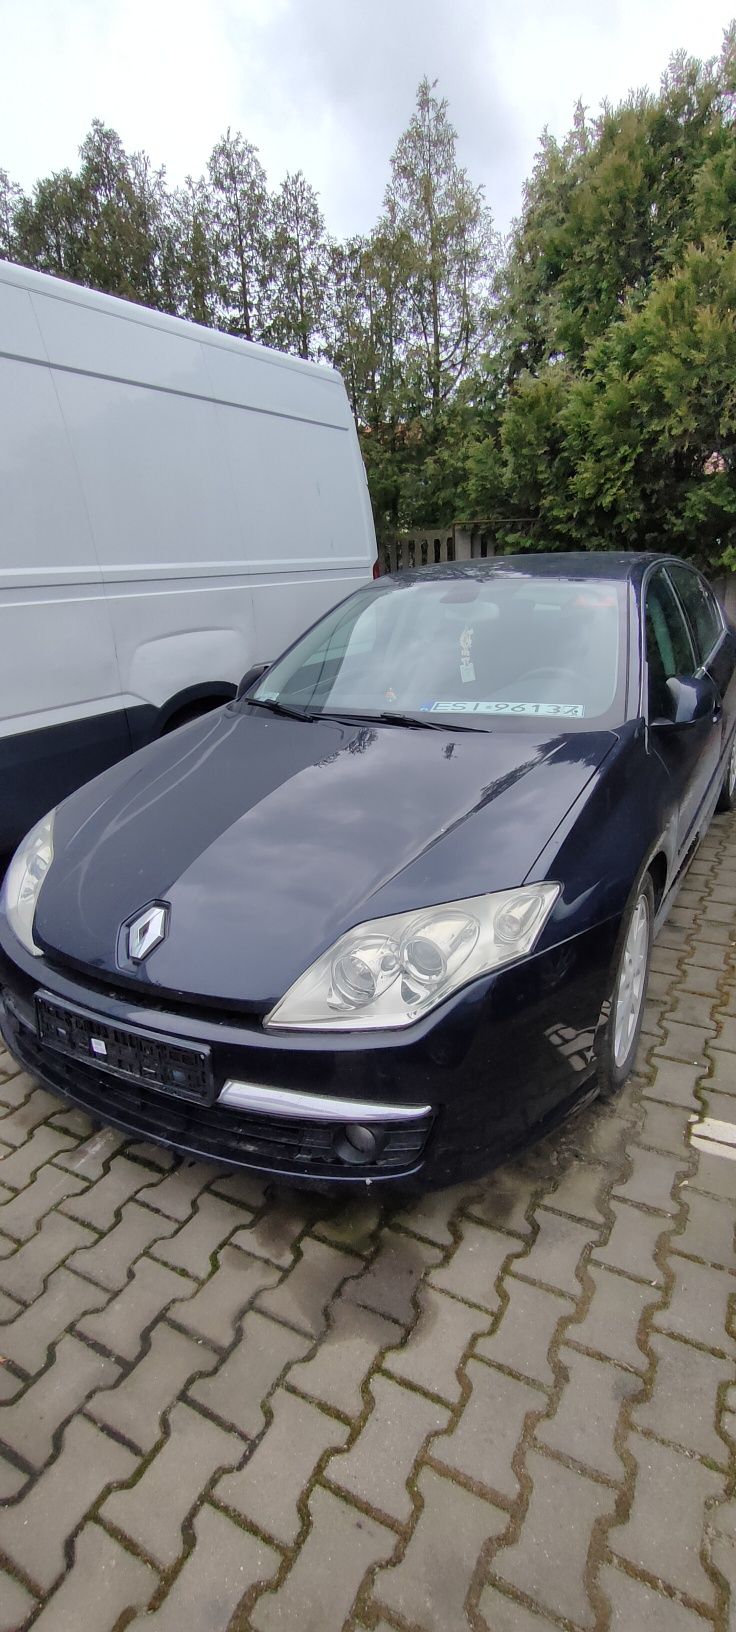 Sprzedam Renault Laguna3 uszkodzona